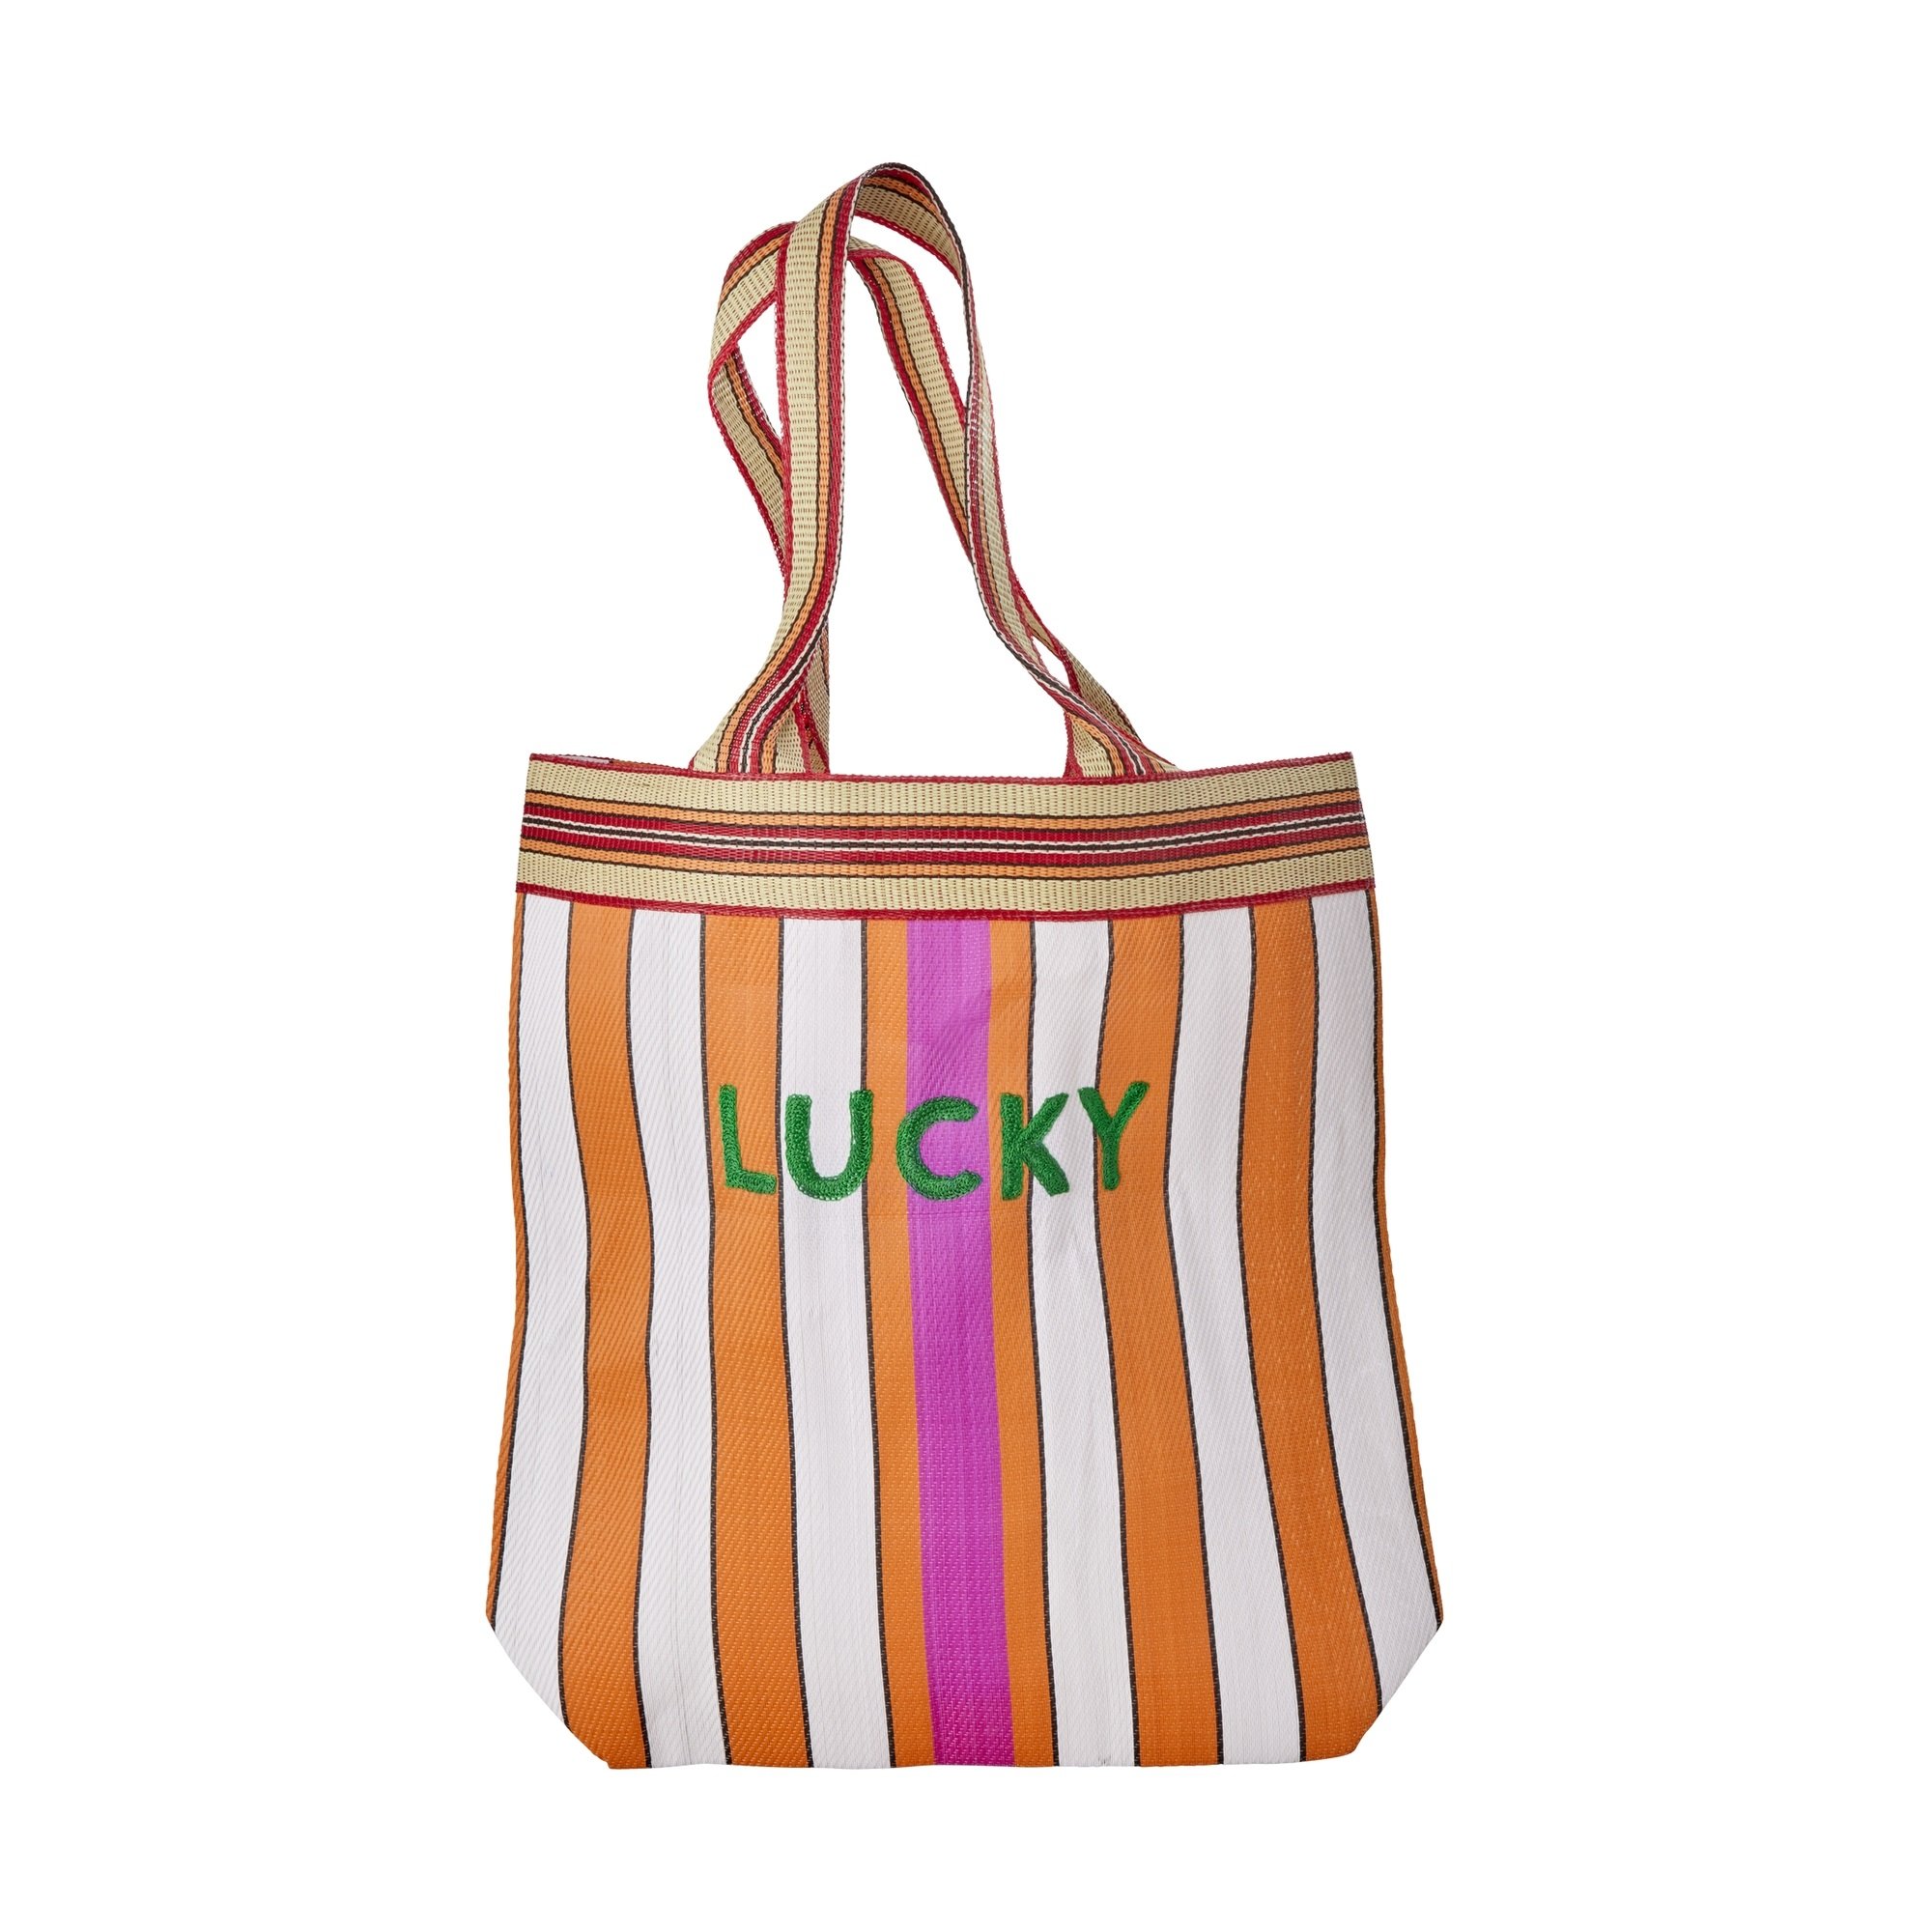 Rice - Recycled Plastic Shopping Bag Stripes with LUCKY Embroidery - Hjemme og kjøkken